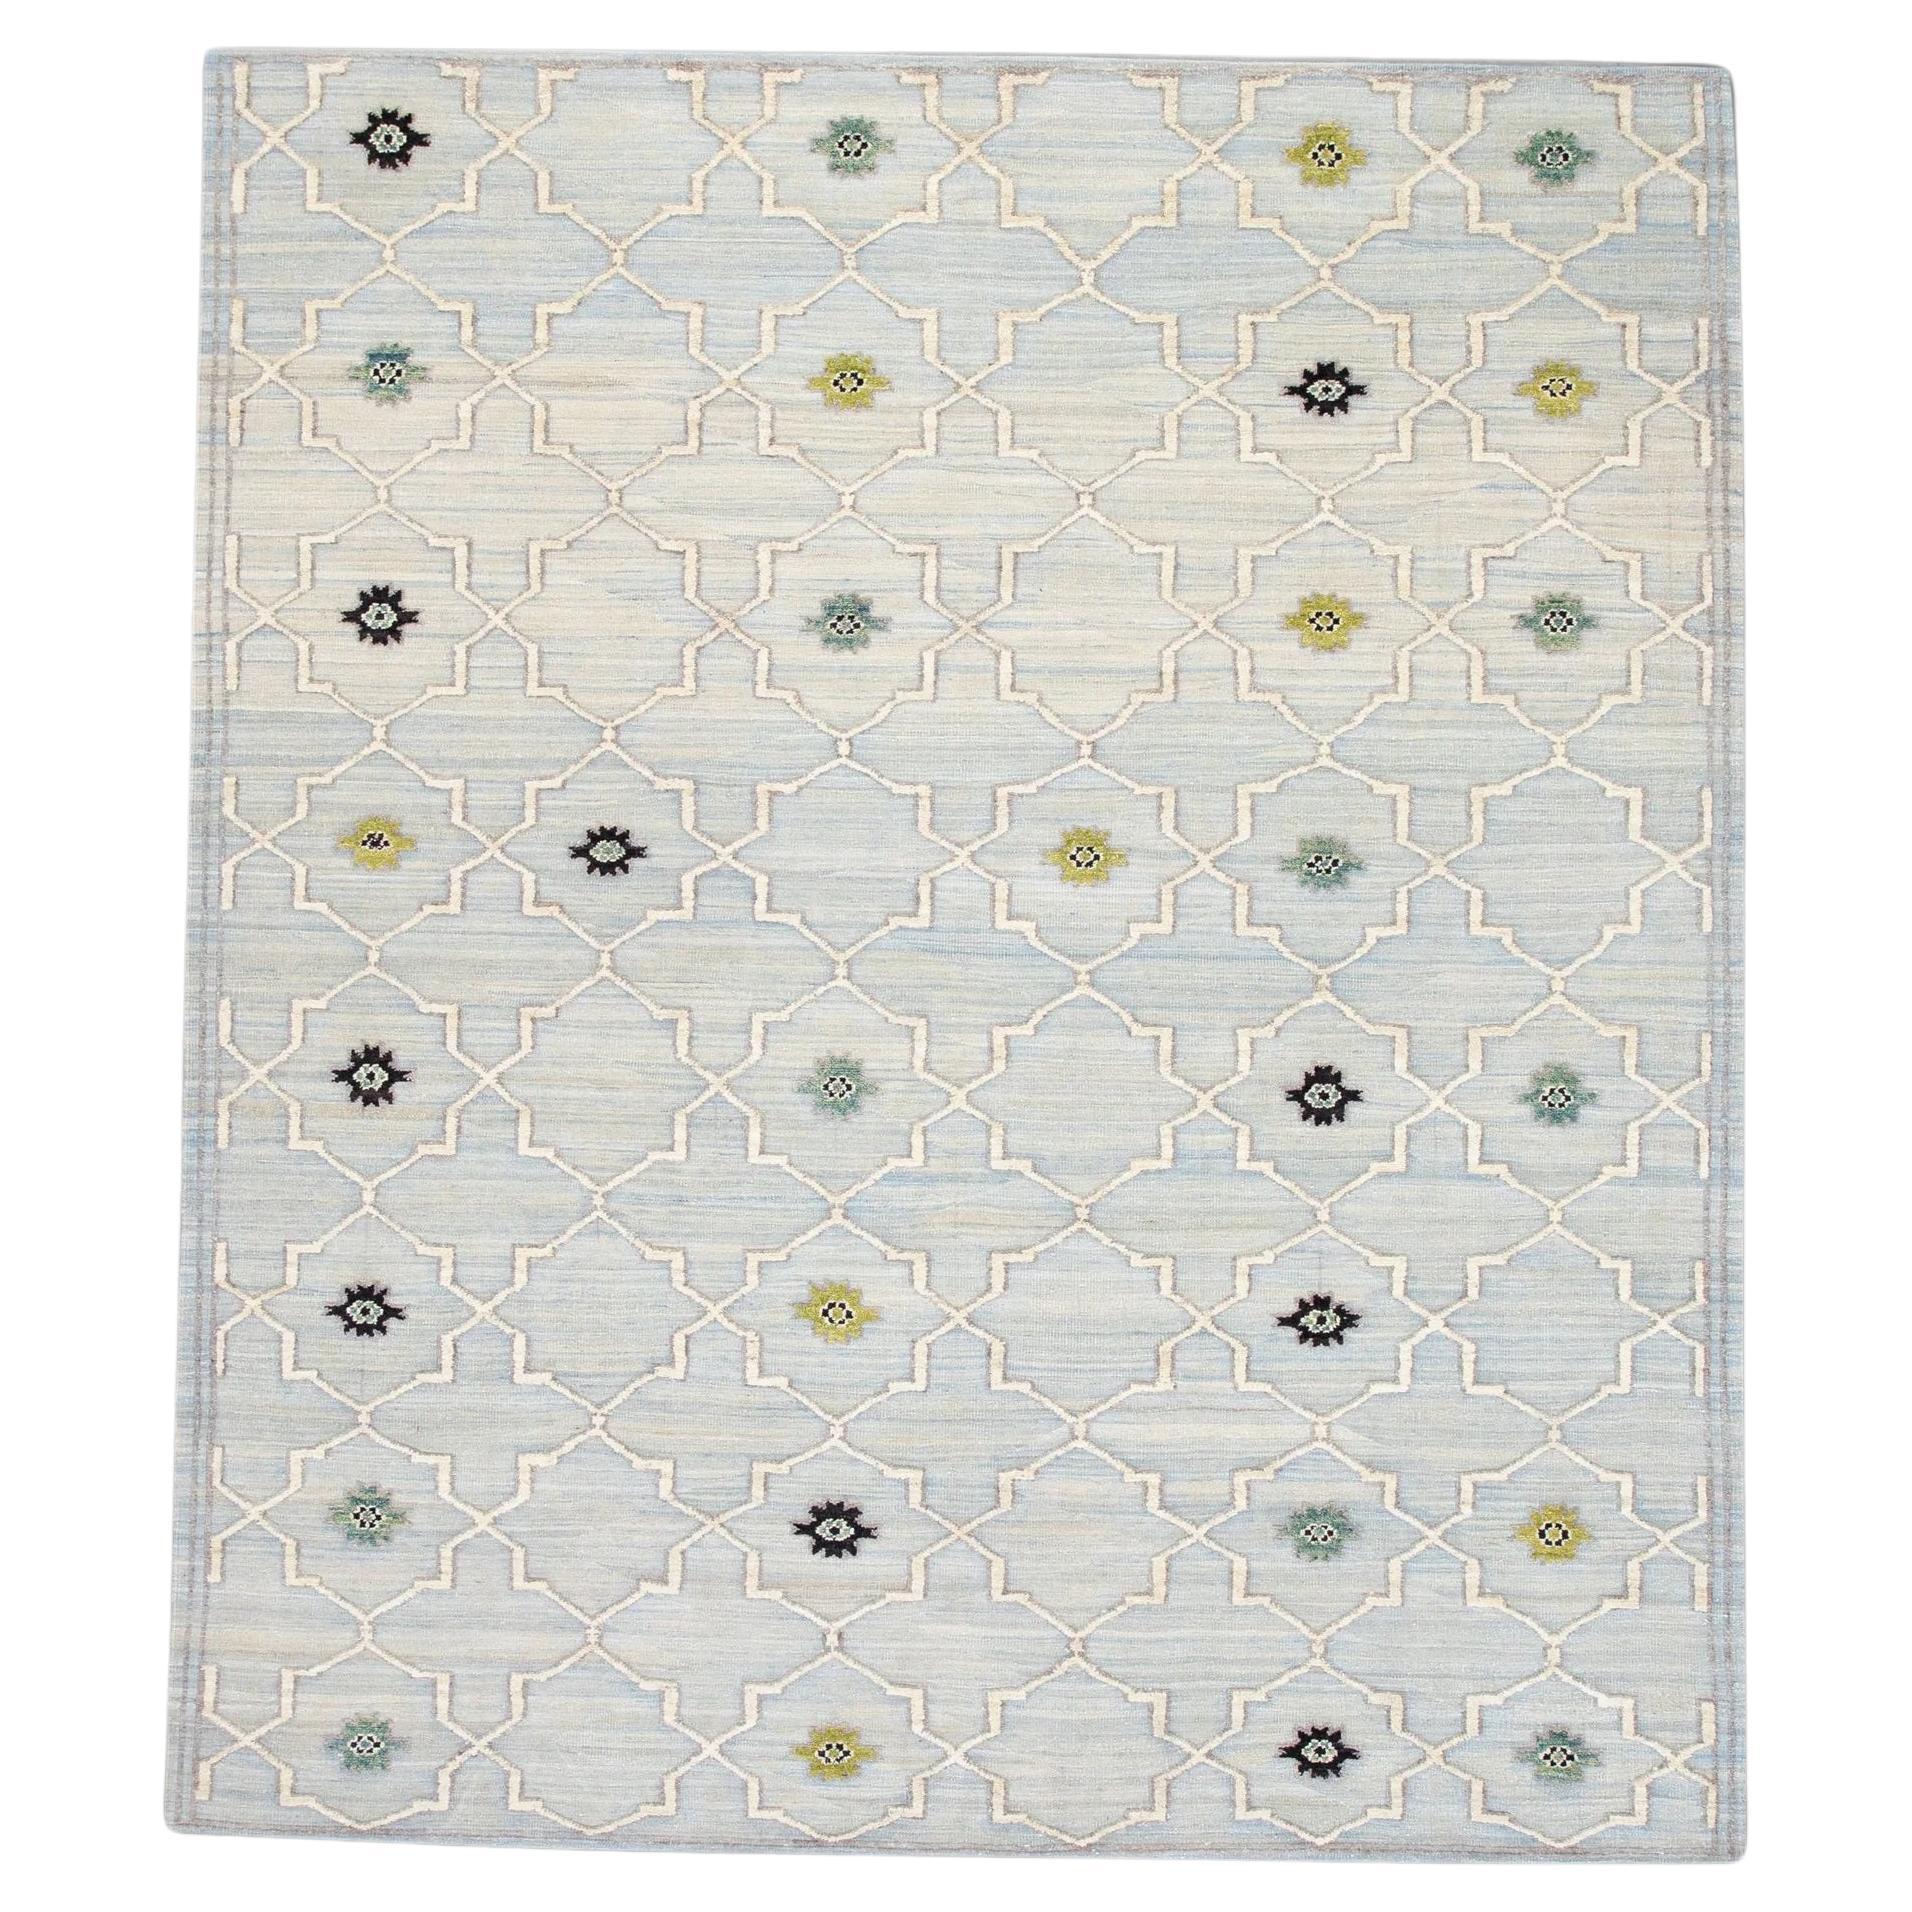 Blue and Green Geometric Design Flatweave Handmade Wool Rug 8'3" X 10'2" For Sale